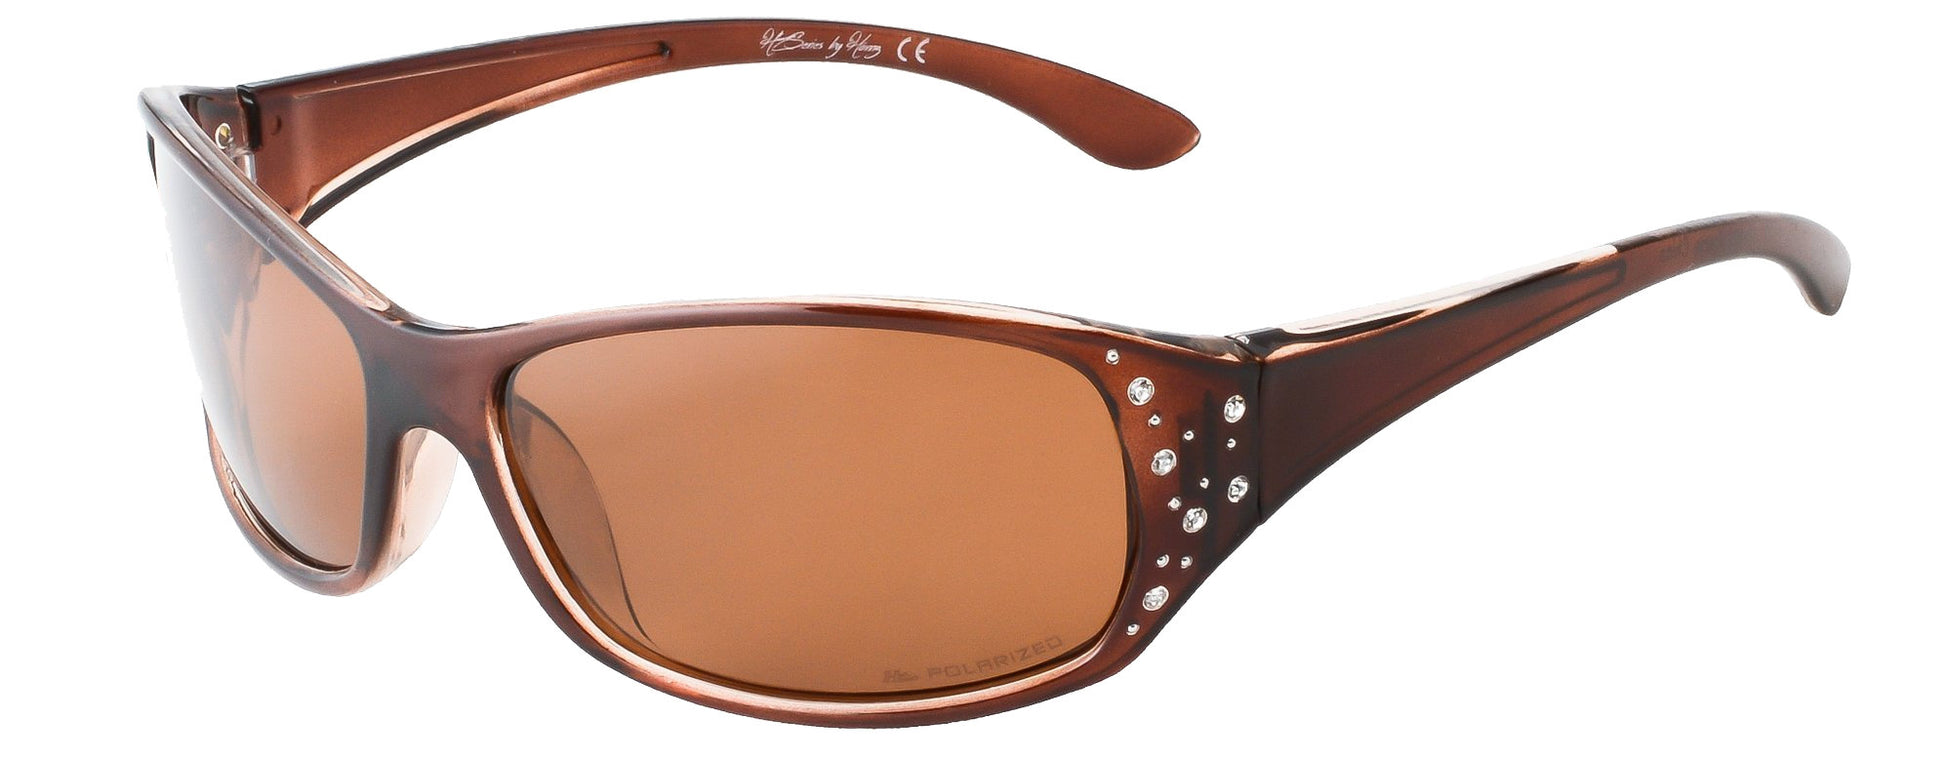 Polarized Sunglasses for Women – Honey Amber Frame – Amber Lens